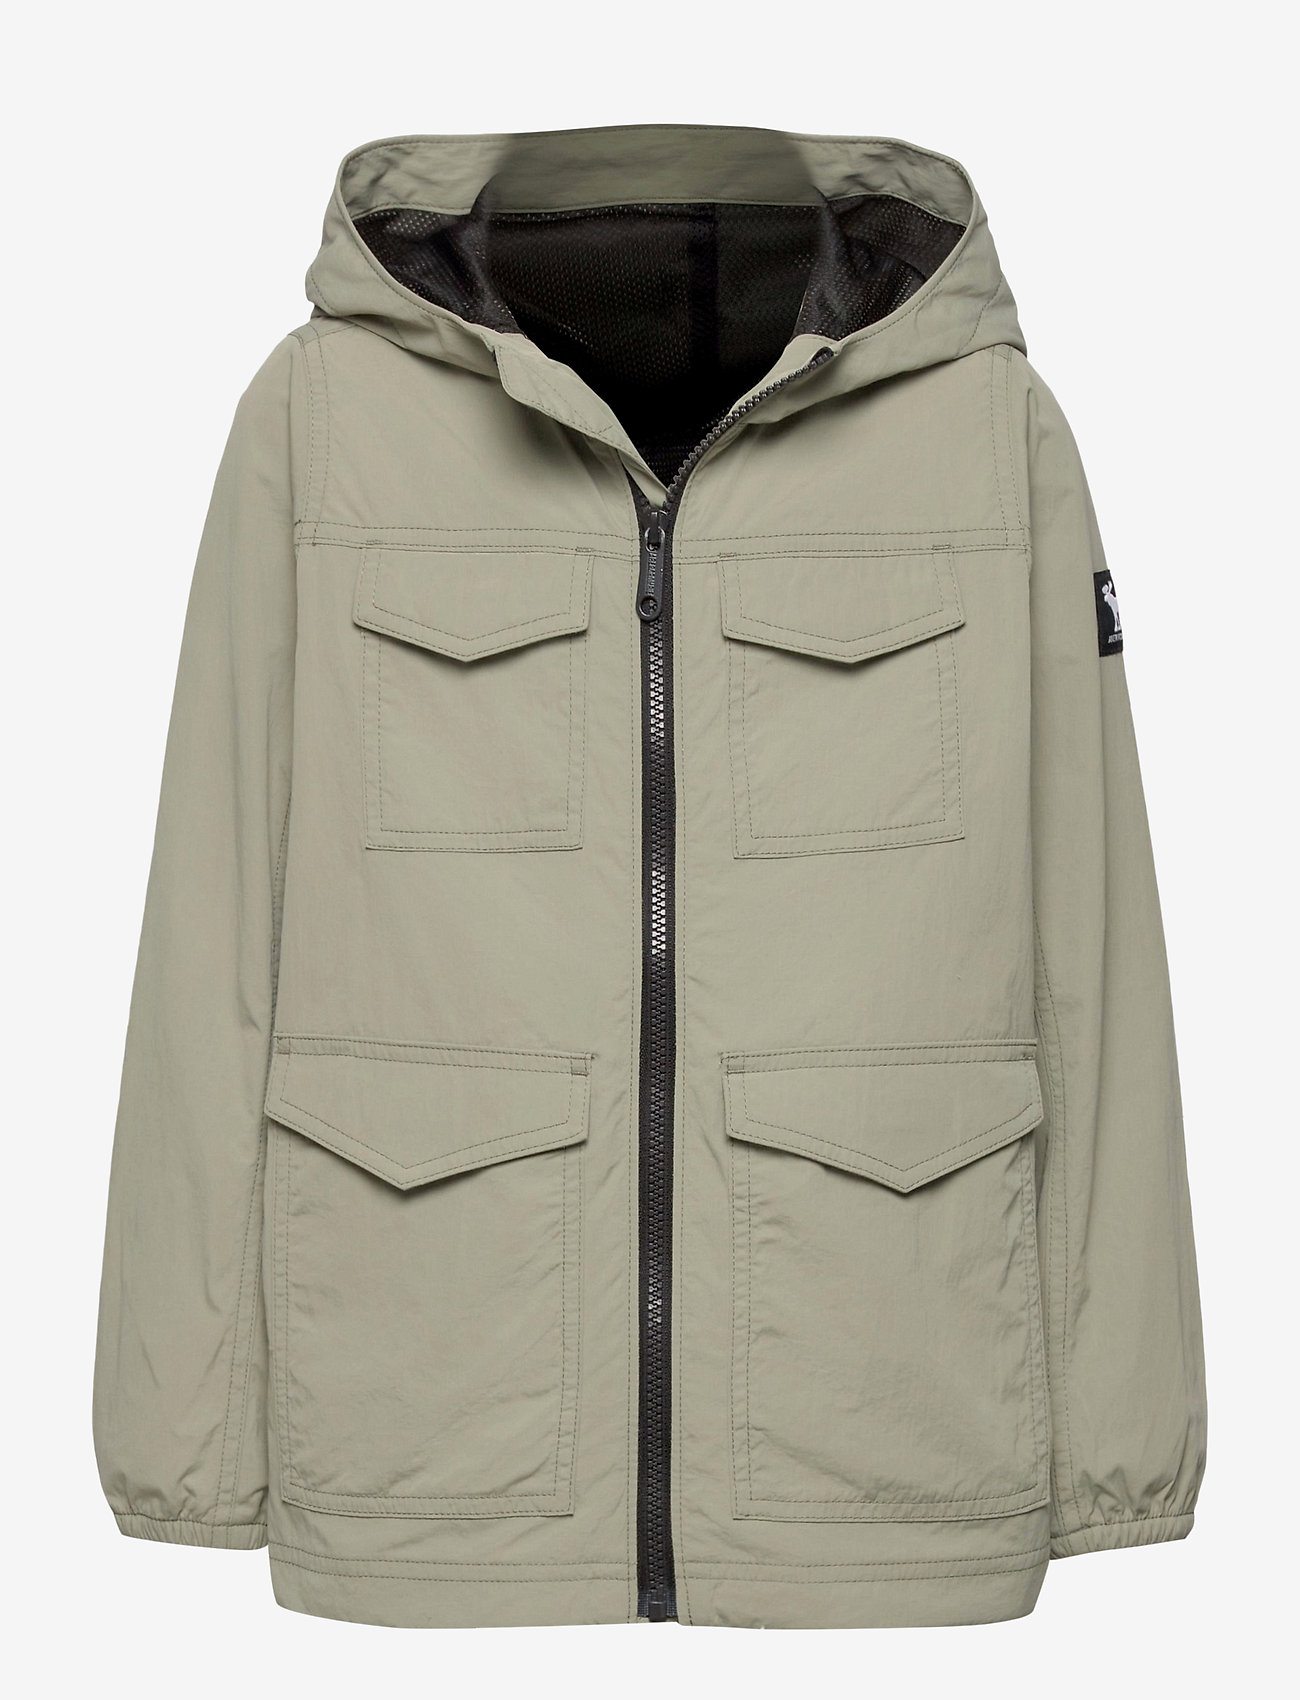 abercrombie field jacket